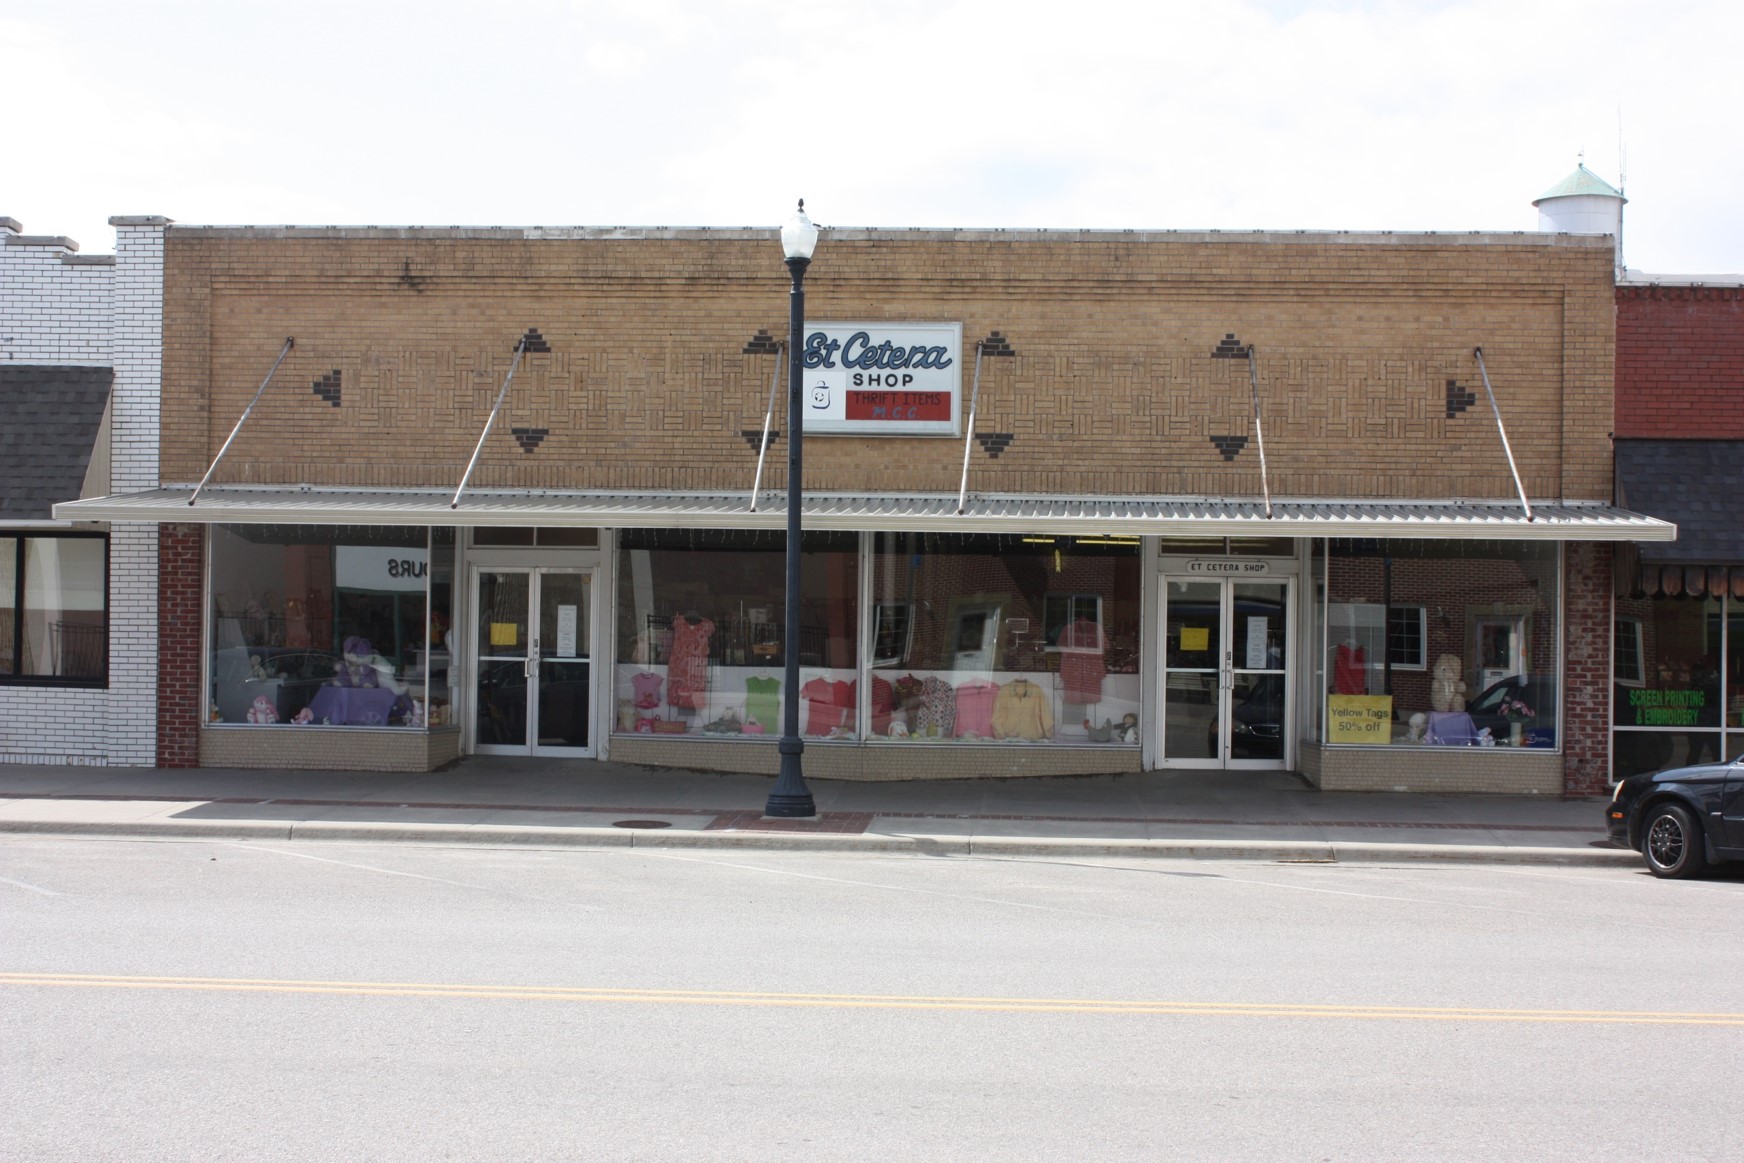 The Hillsboro Et Cetera Shop storefront